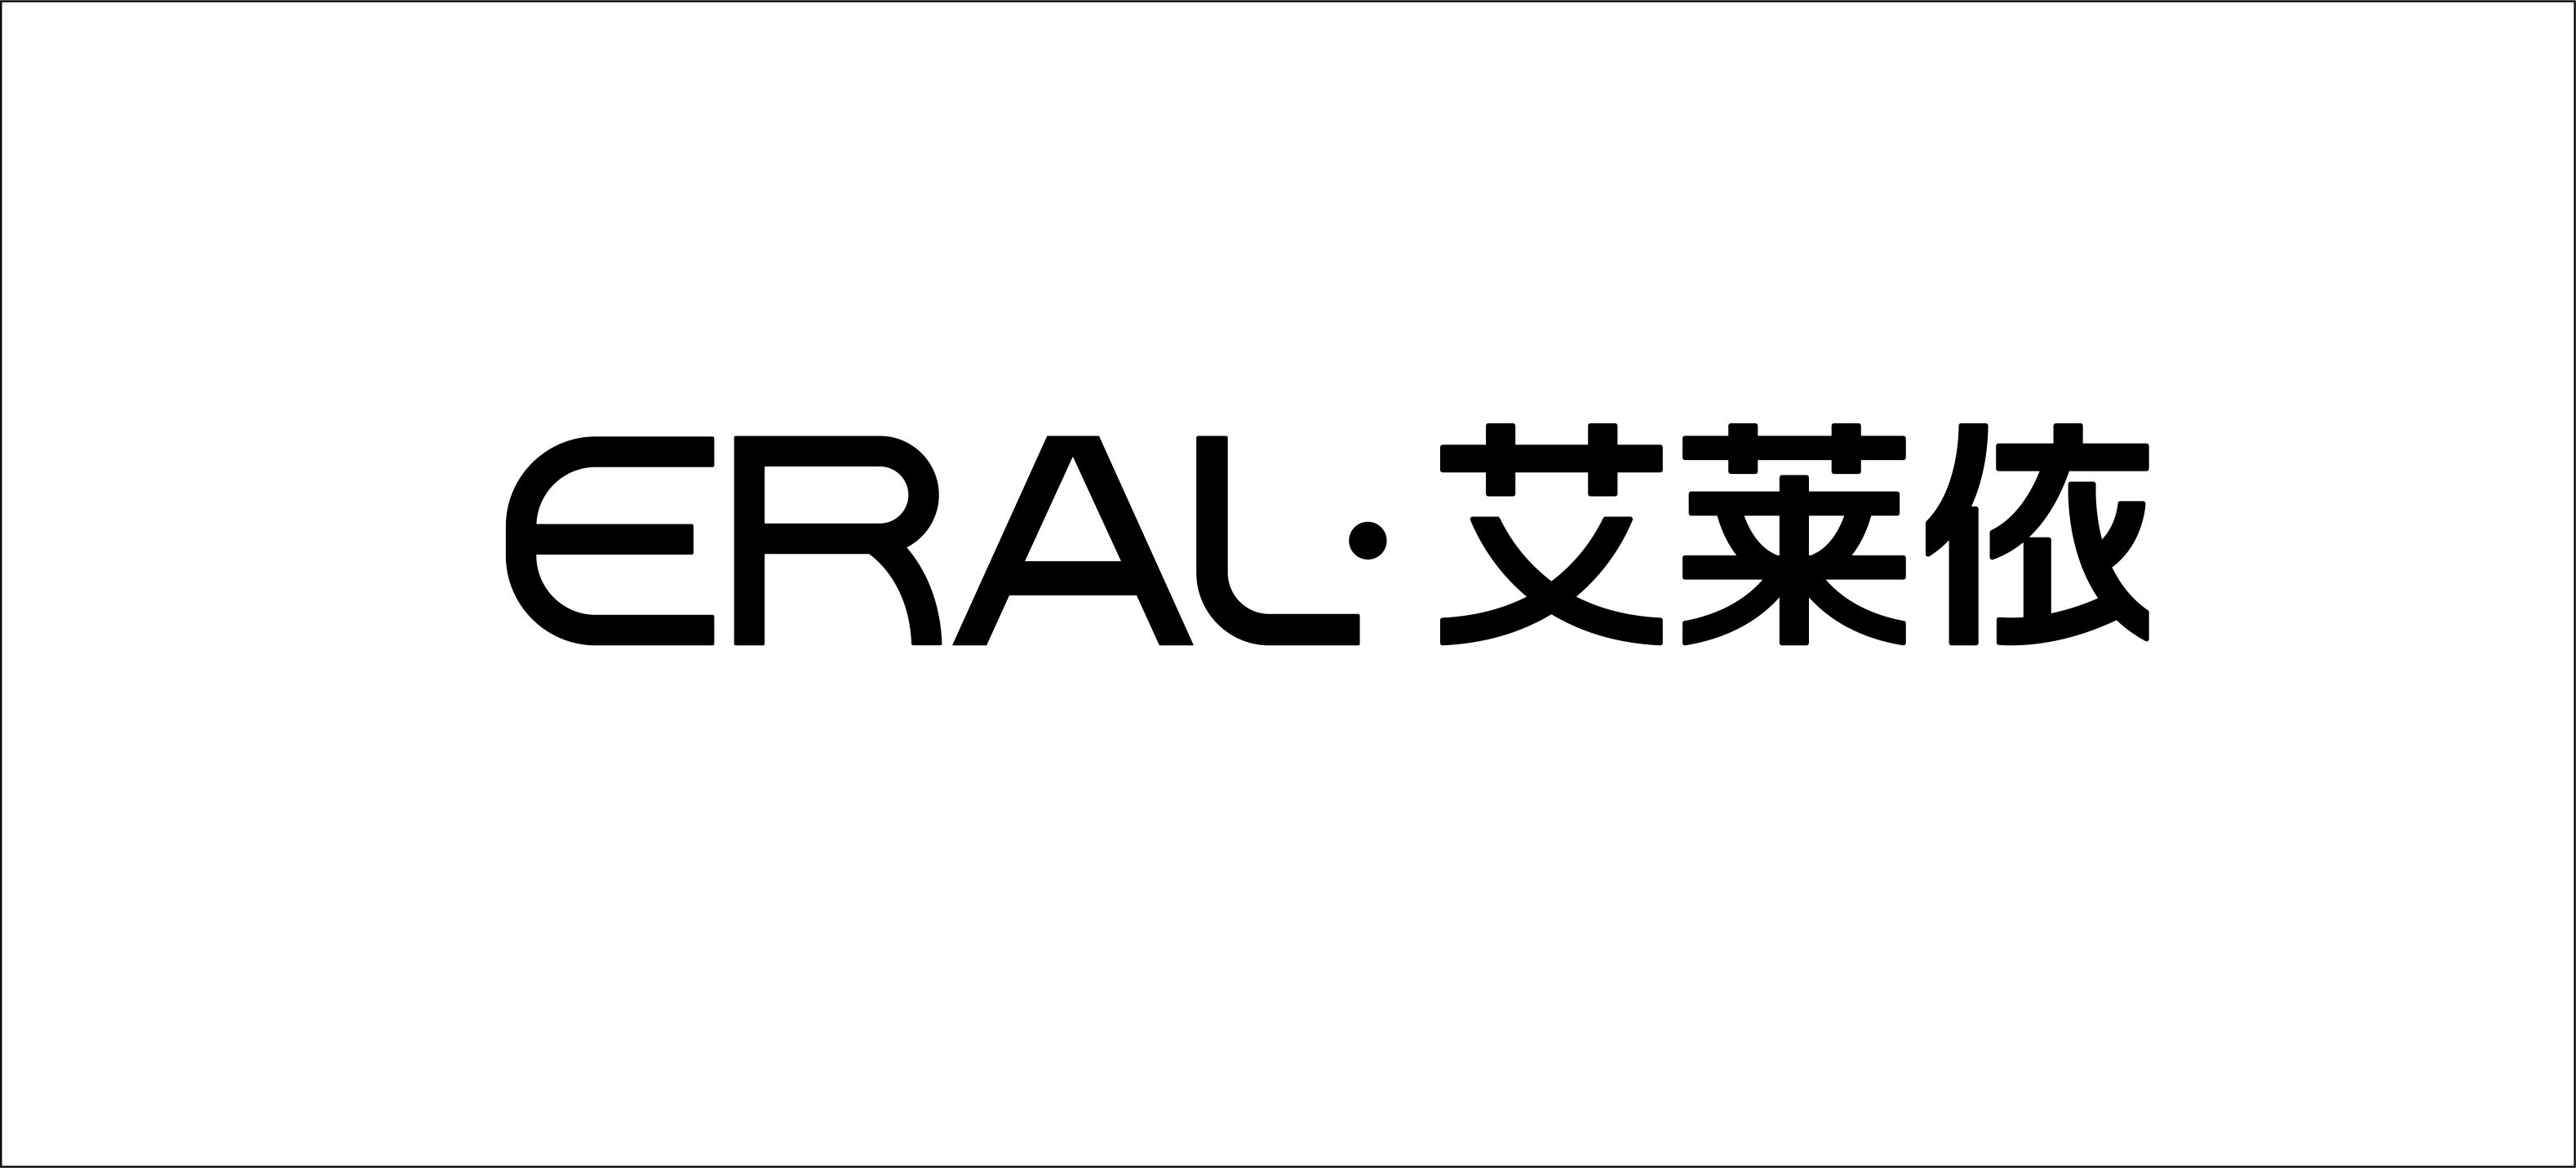 艾莱依羽绒服拉链logo图片